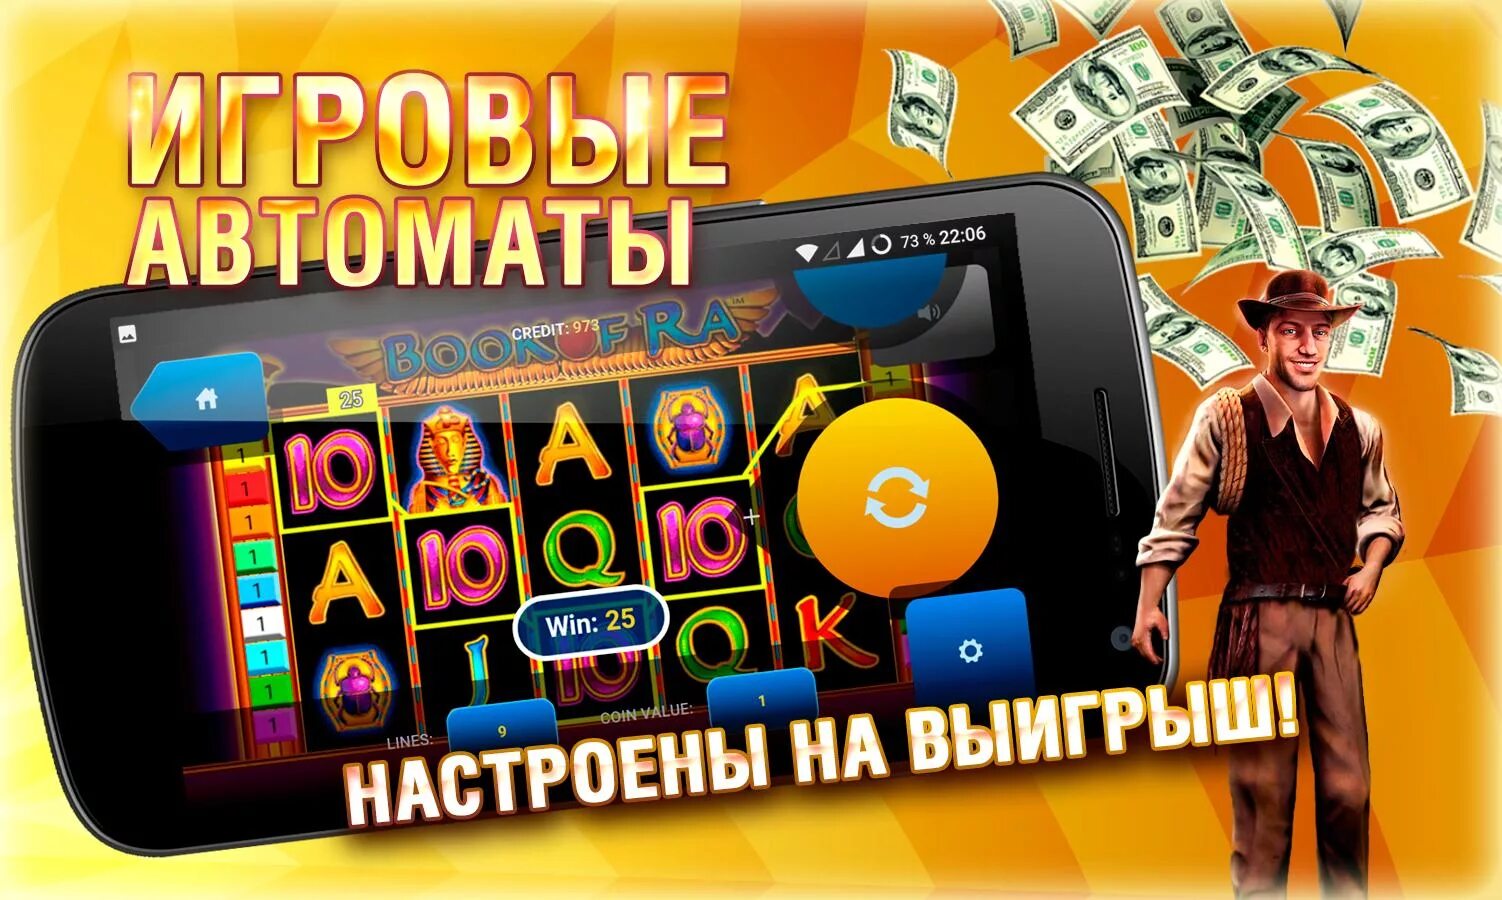 Unlim casino мобильное приложение. Программы мобильное казино. Казино приложение. Выигрыш в мобильном казино. Google мобильное казино.